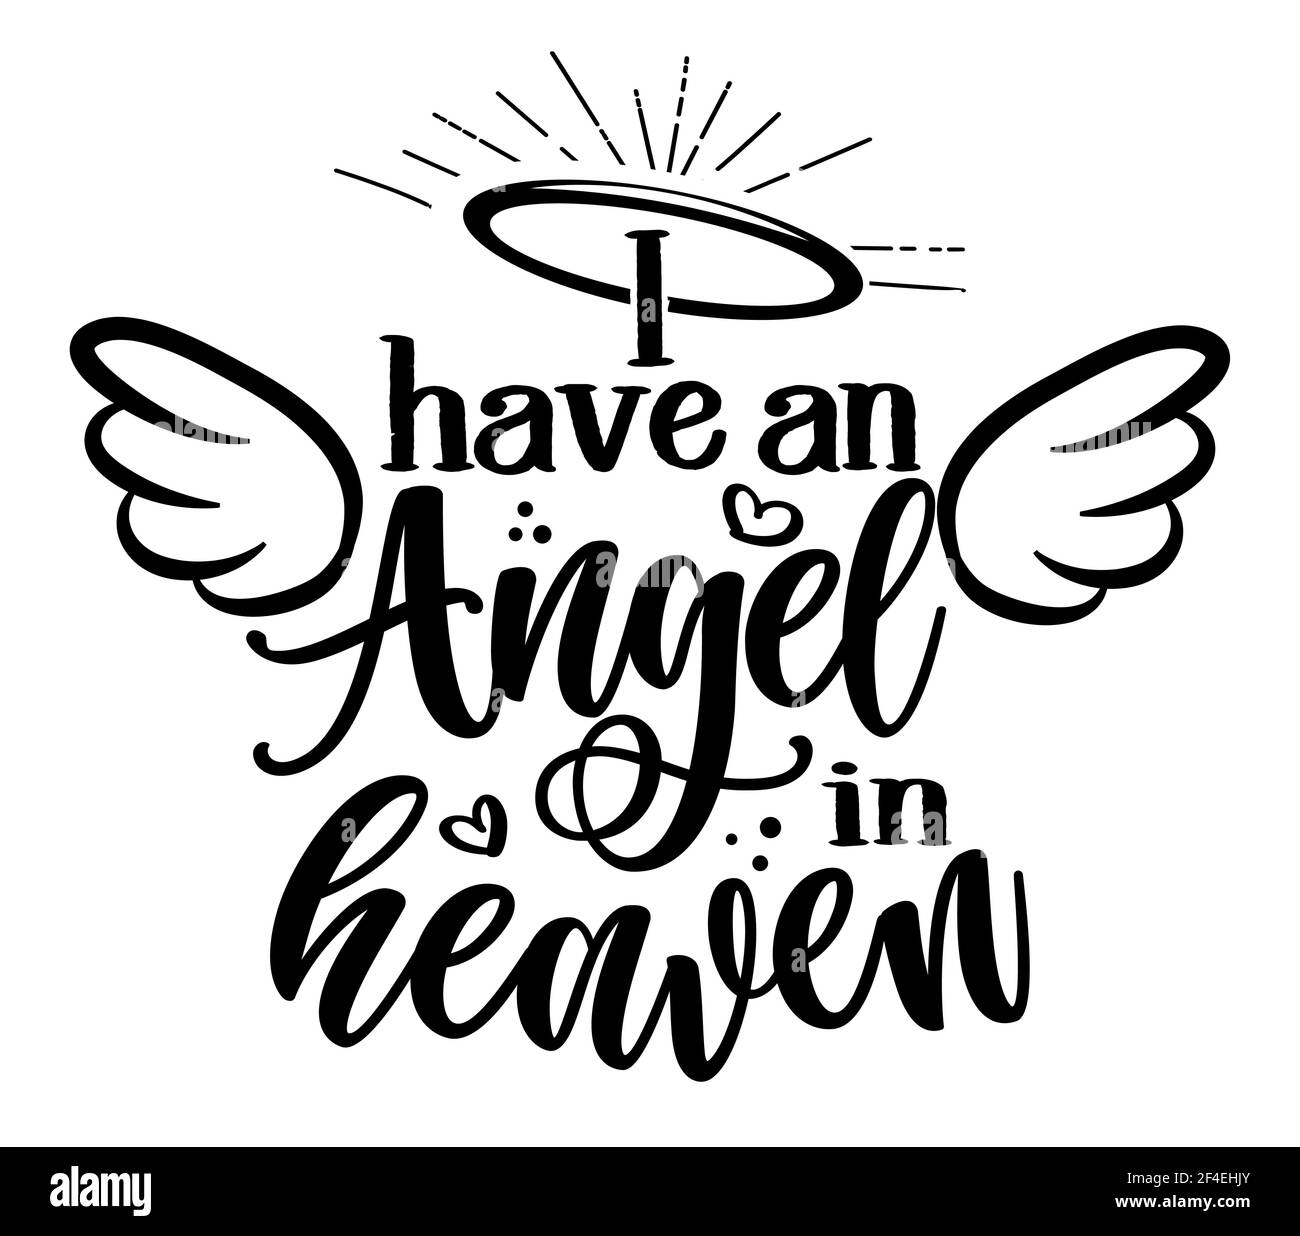 Ich habe einen Engel im Himmel - handgezeichnete schöne Gedächtnisphrase. Ruhe in Frieden, RIP-Speicher. Liebe deine Kinder. Inspirierendes Typografie-Poster mit einem Stock Vektor